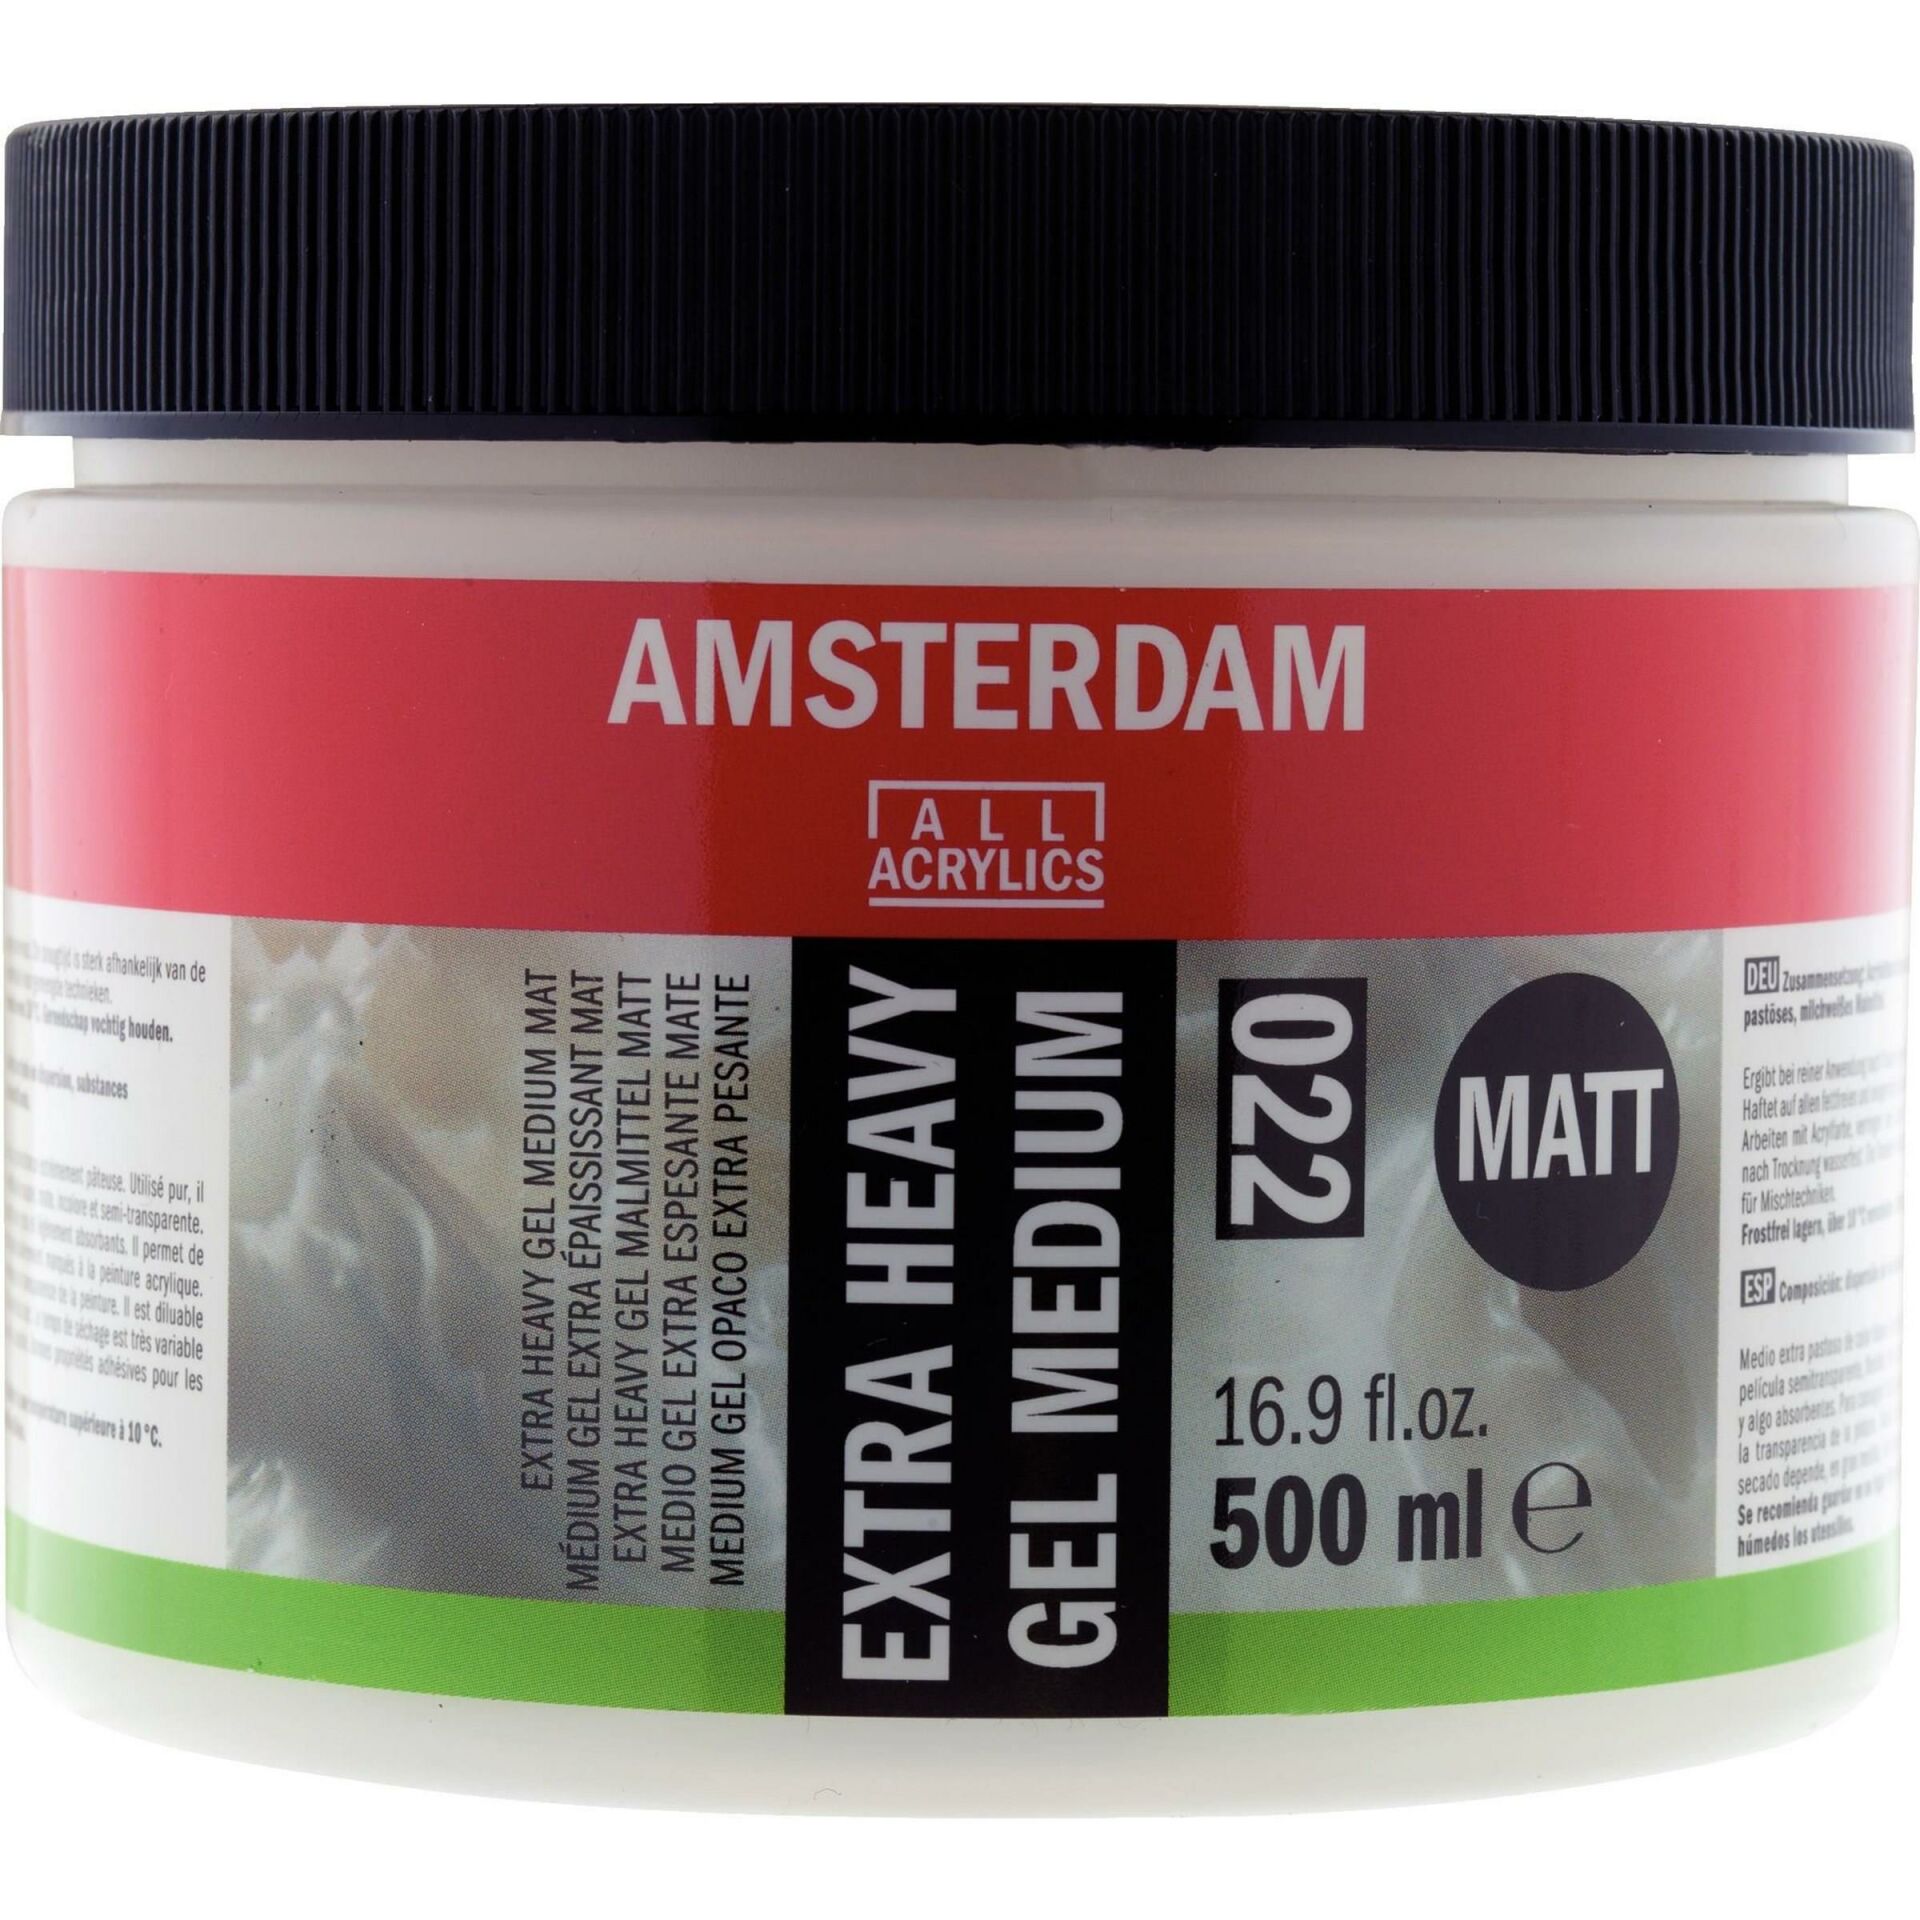 AMSTERDAM EXTRA HEAVY GEL MEDIUM MATT 022 500ML